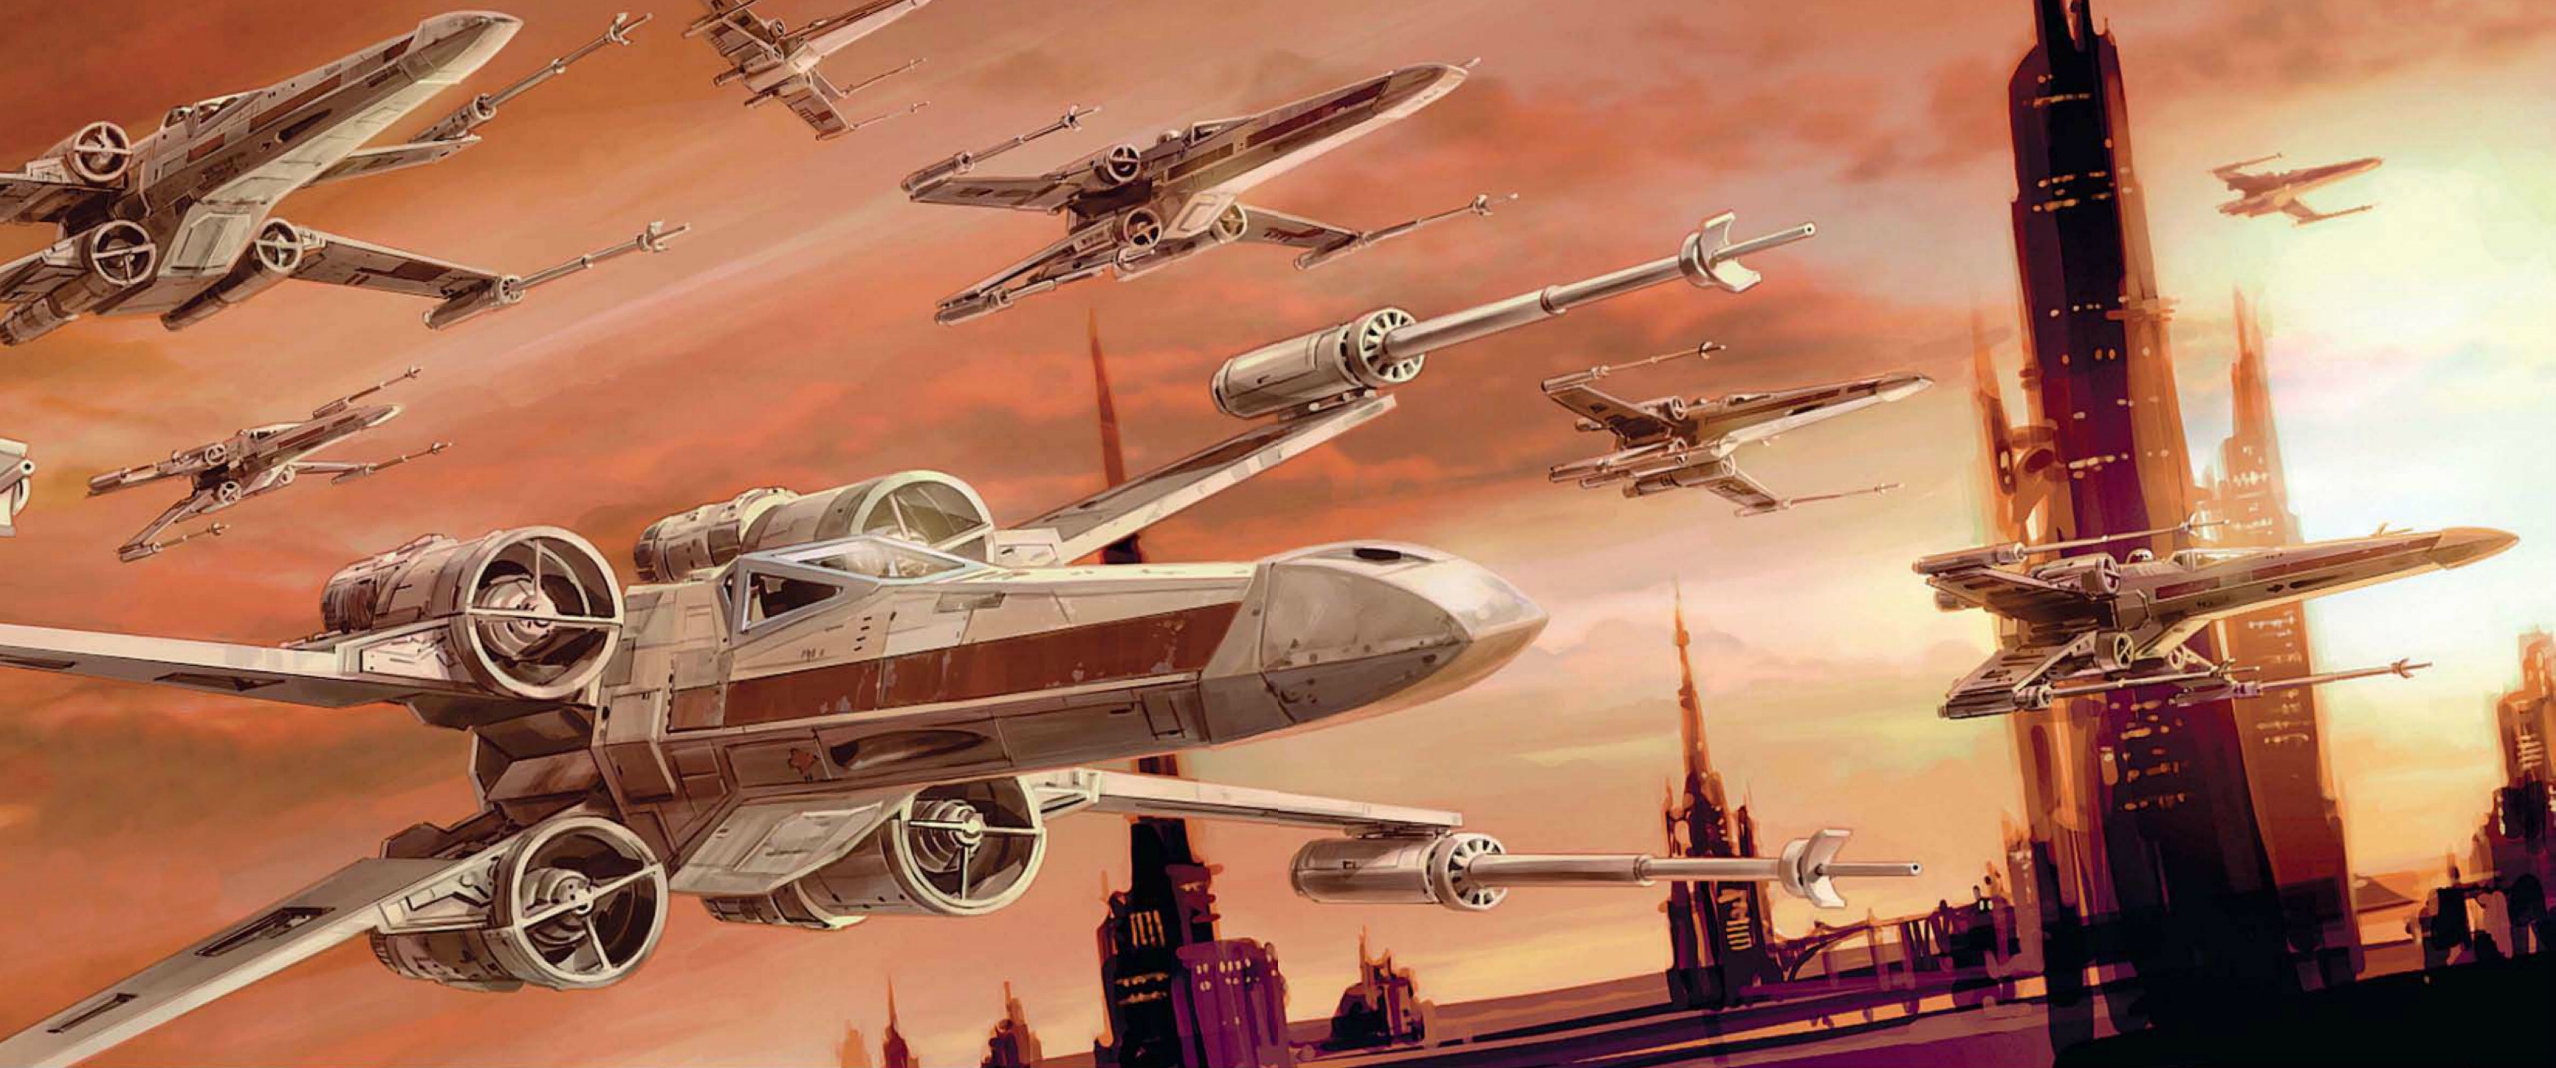 Rogue Squadron Tea - Wedge Antilles Star Wars 9 - HD Wallpaper 